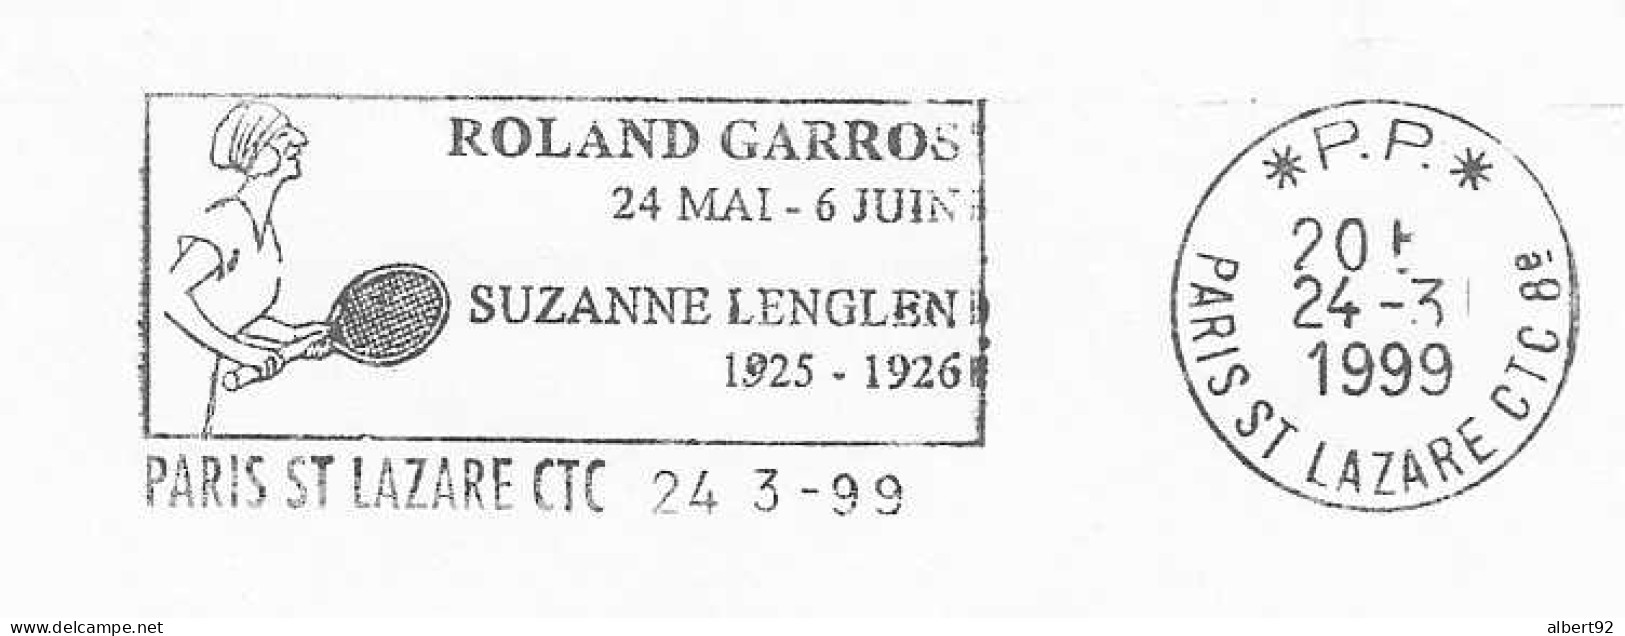 1999 Hommage à Suzanne Lenglen : Médaillée Or (Tennis: Simple + Double Mixte) Jeux Olympiques ANVERS 1920 - Sommer 1920: Antwerpen